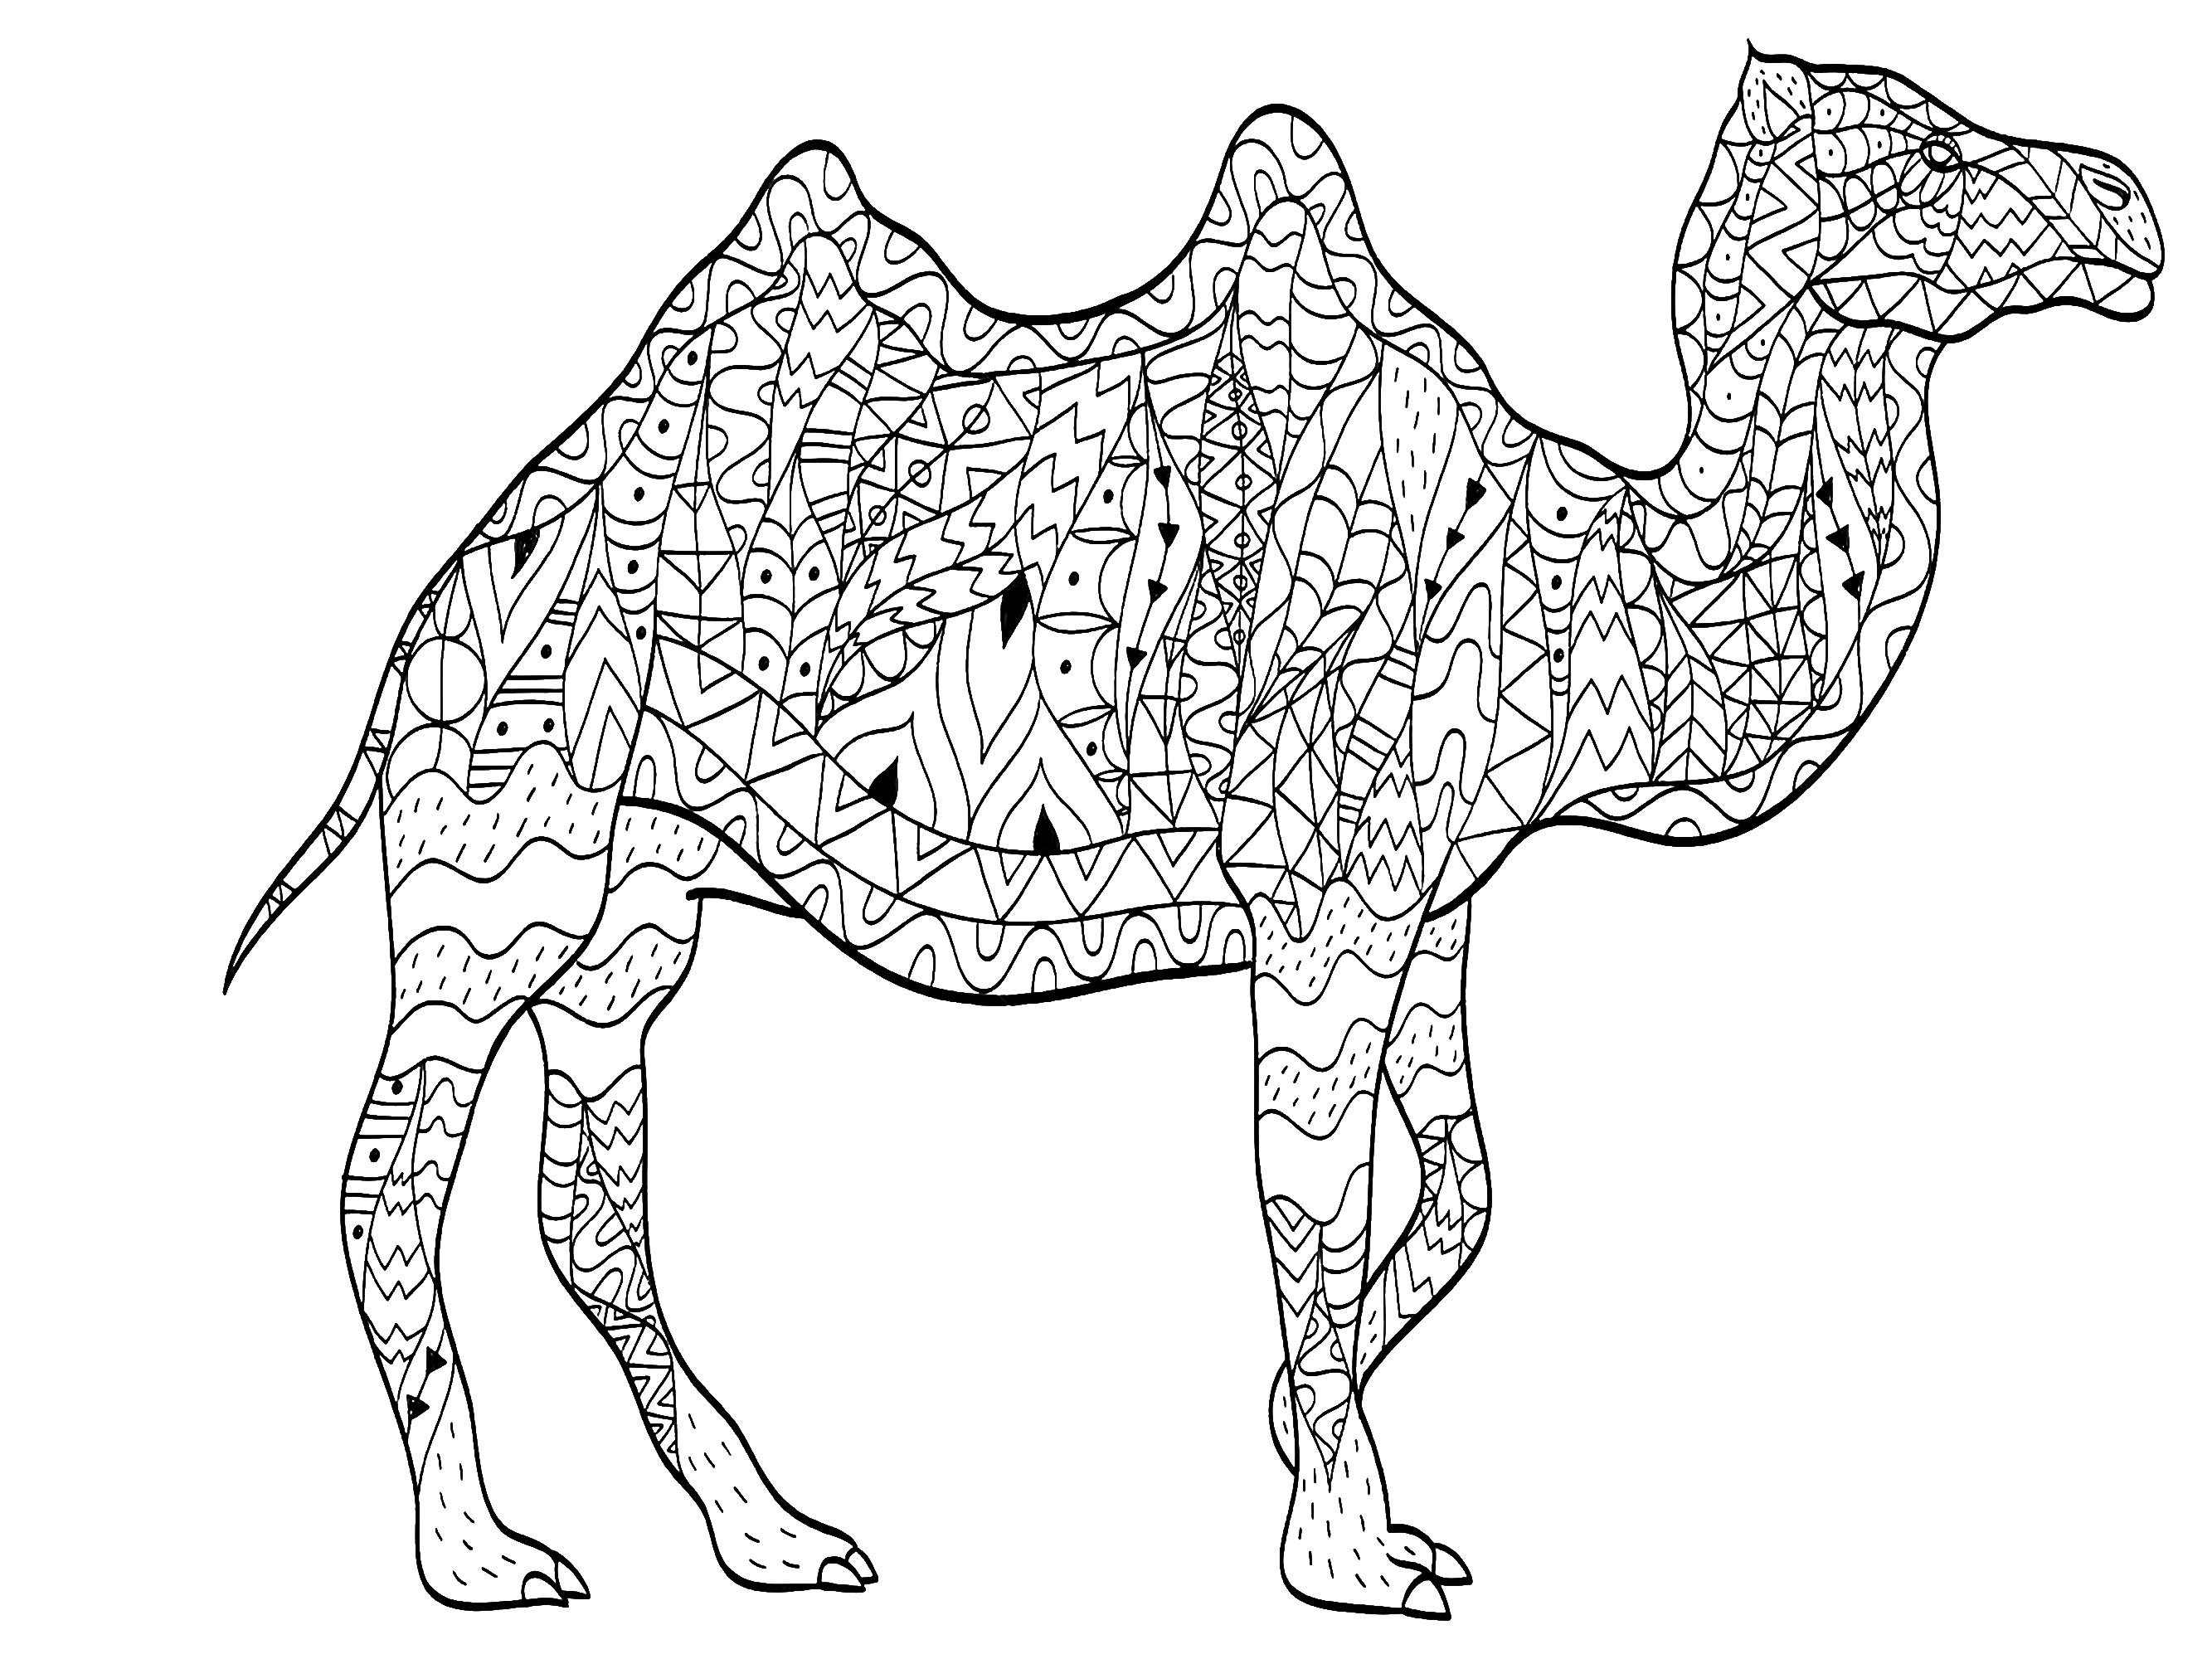 Un majestuoso camello dibujado con motivos variados y originales, Artista : Viktoriia Panchenko   Origen : 123rf